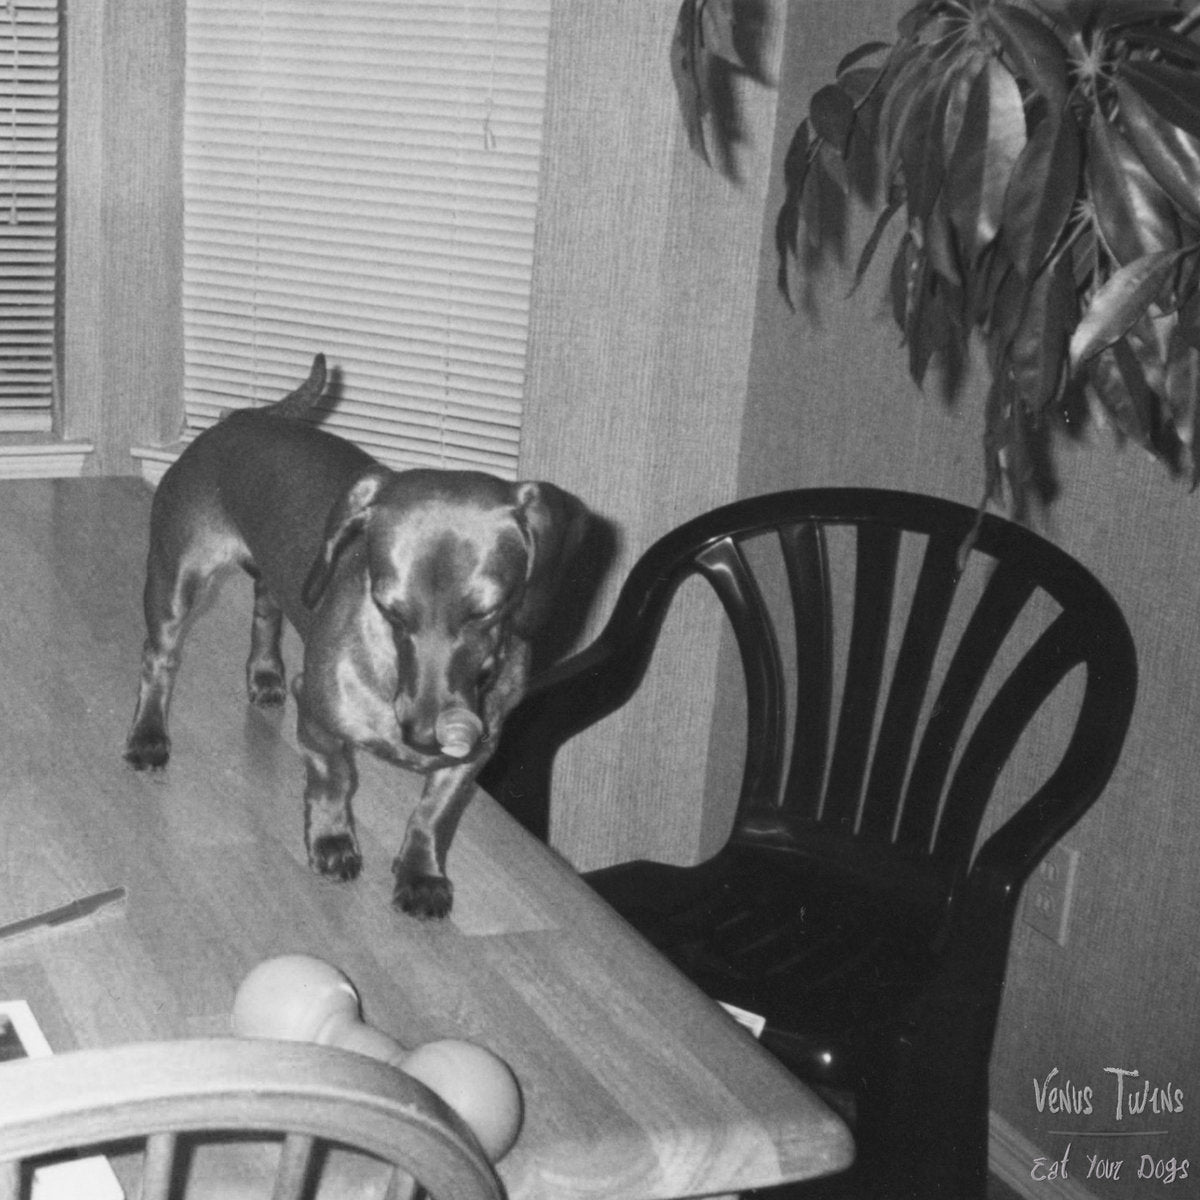 VENUS TWINS - Eat Your Dogs (cassette)